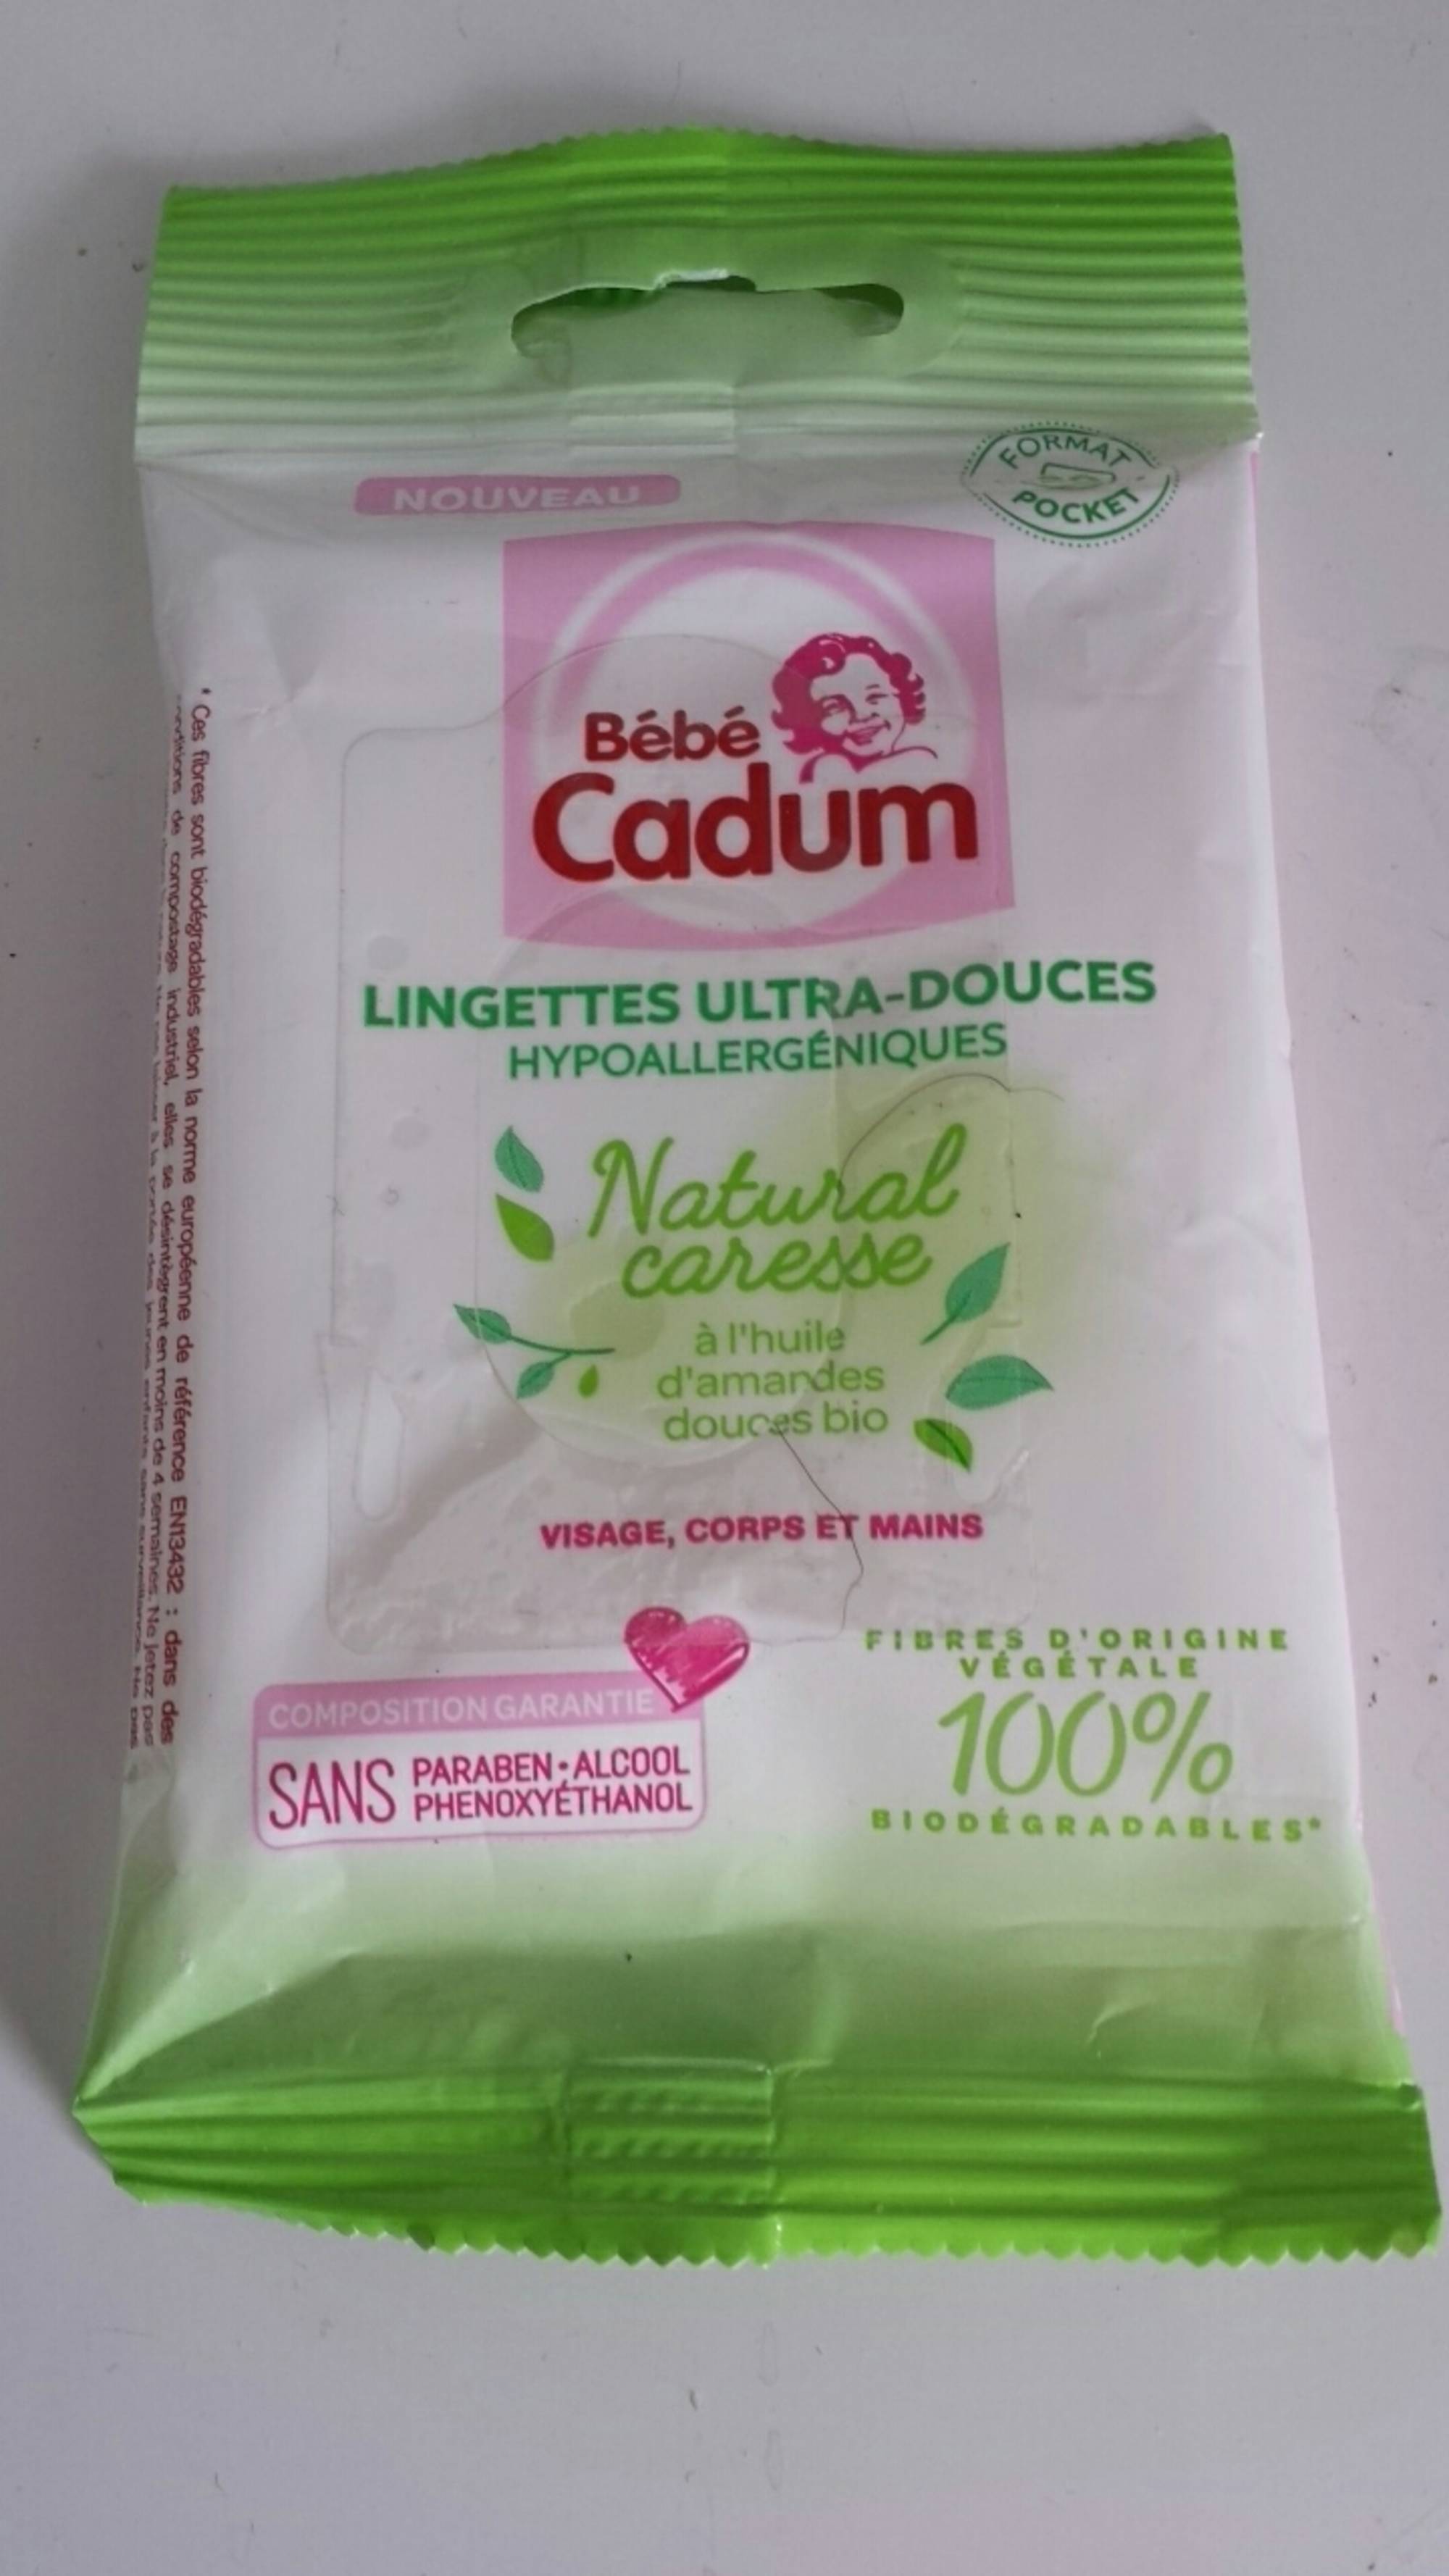 CADUM - Bébé Cadum - Lingettes ultra-douces